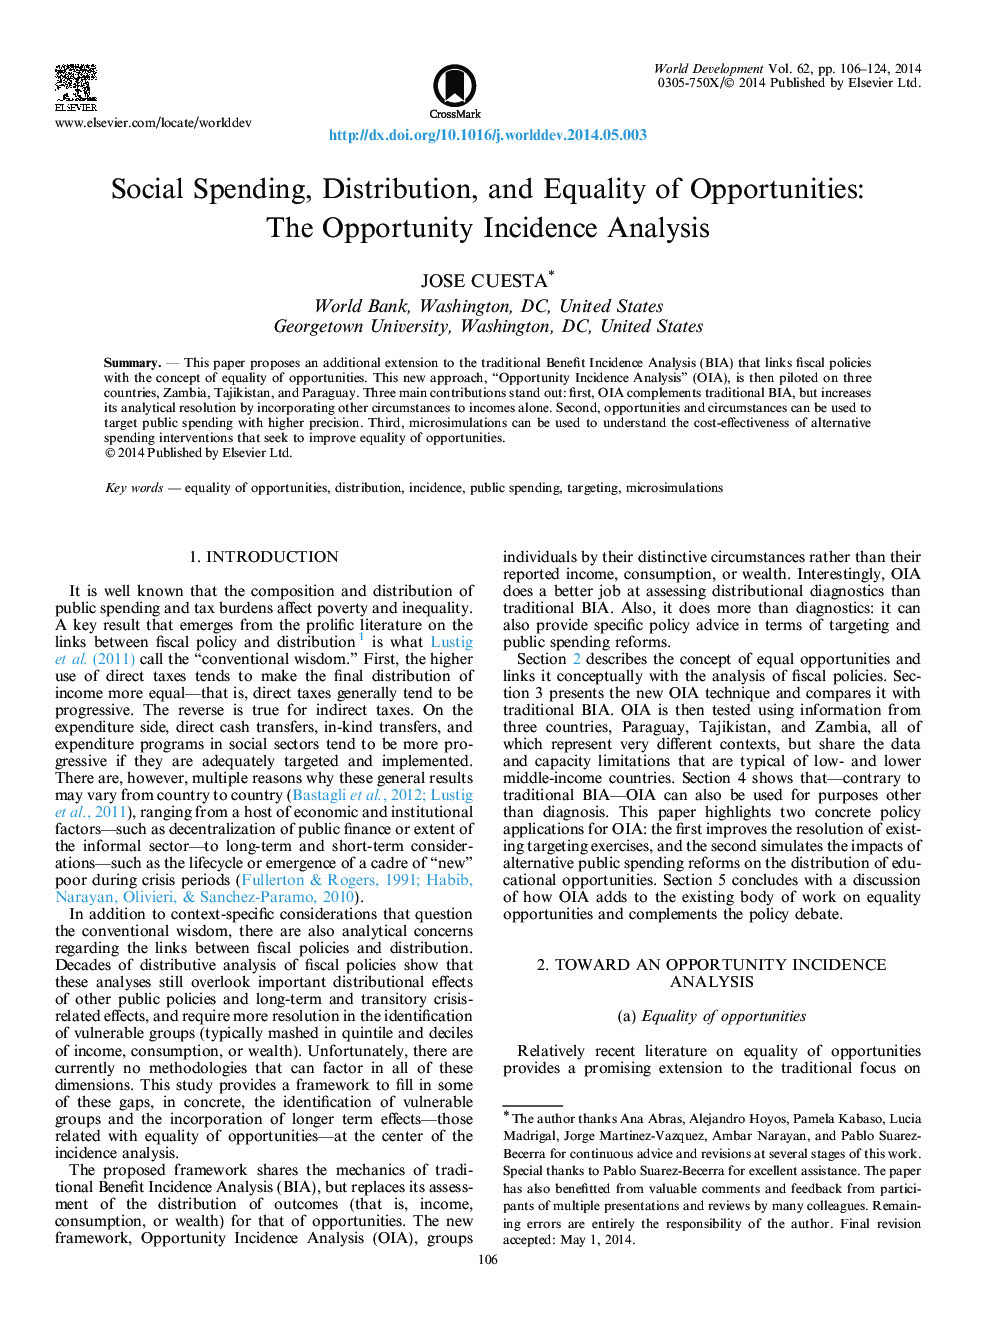 هزینه های اجتماعی، توزیع و برابری فرصت ها: تجزیه و تحلیل بروز فرصت ها